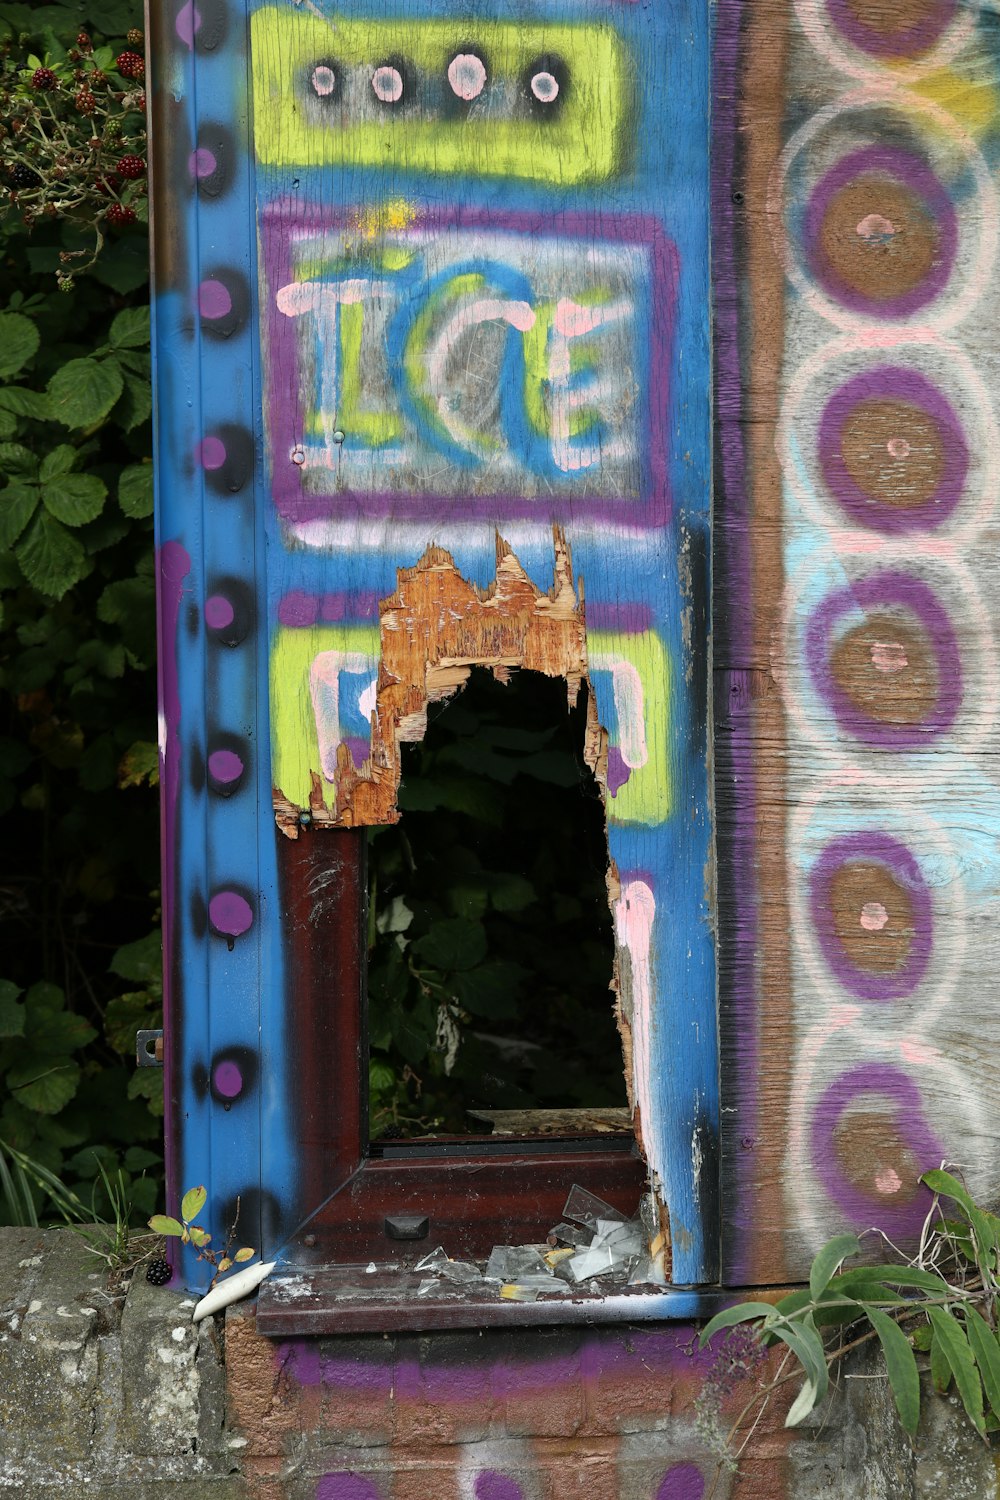 Une boîte colorée avec des graffitis dessus